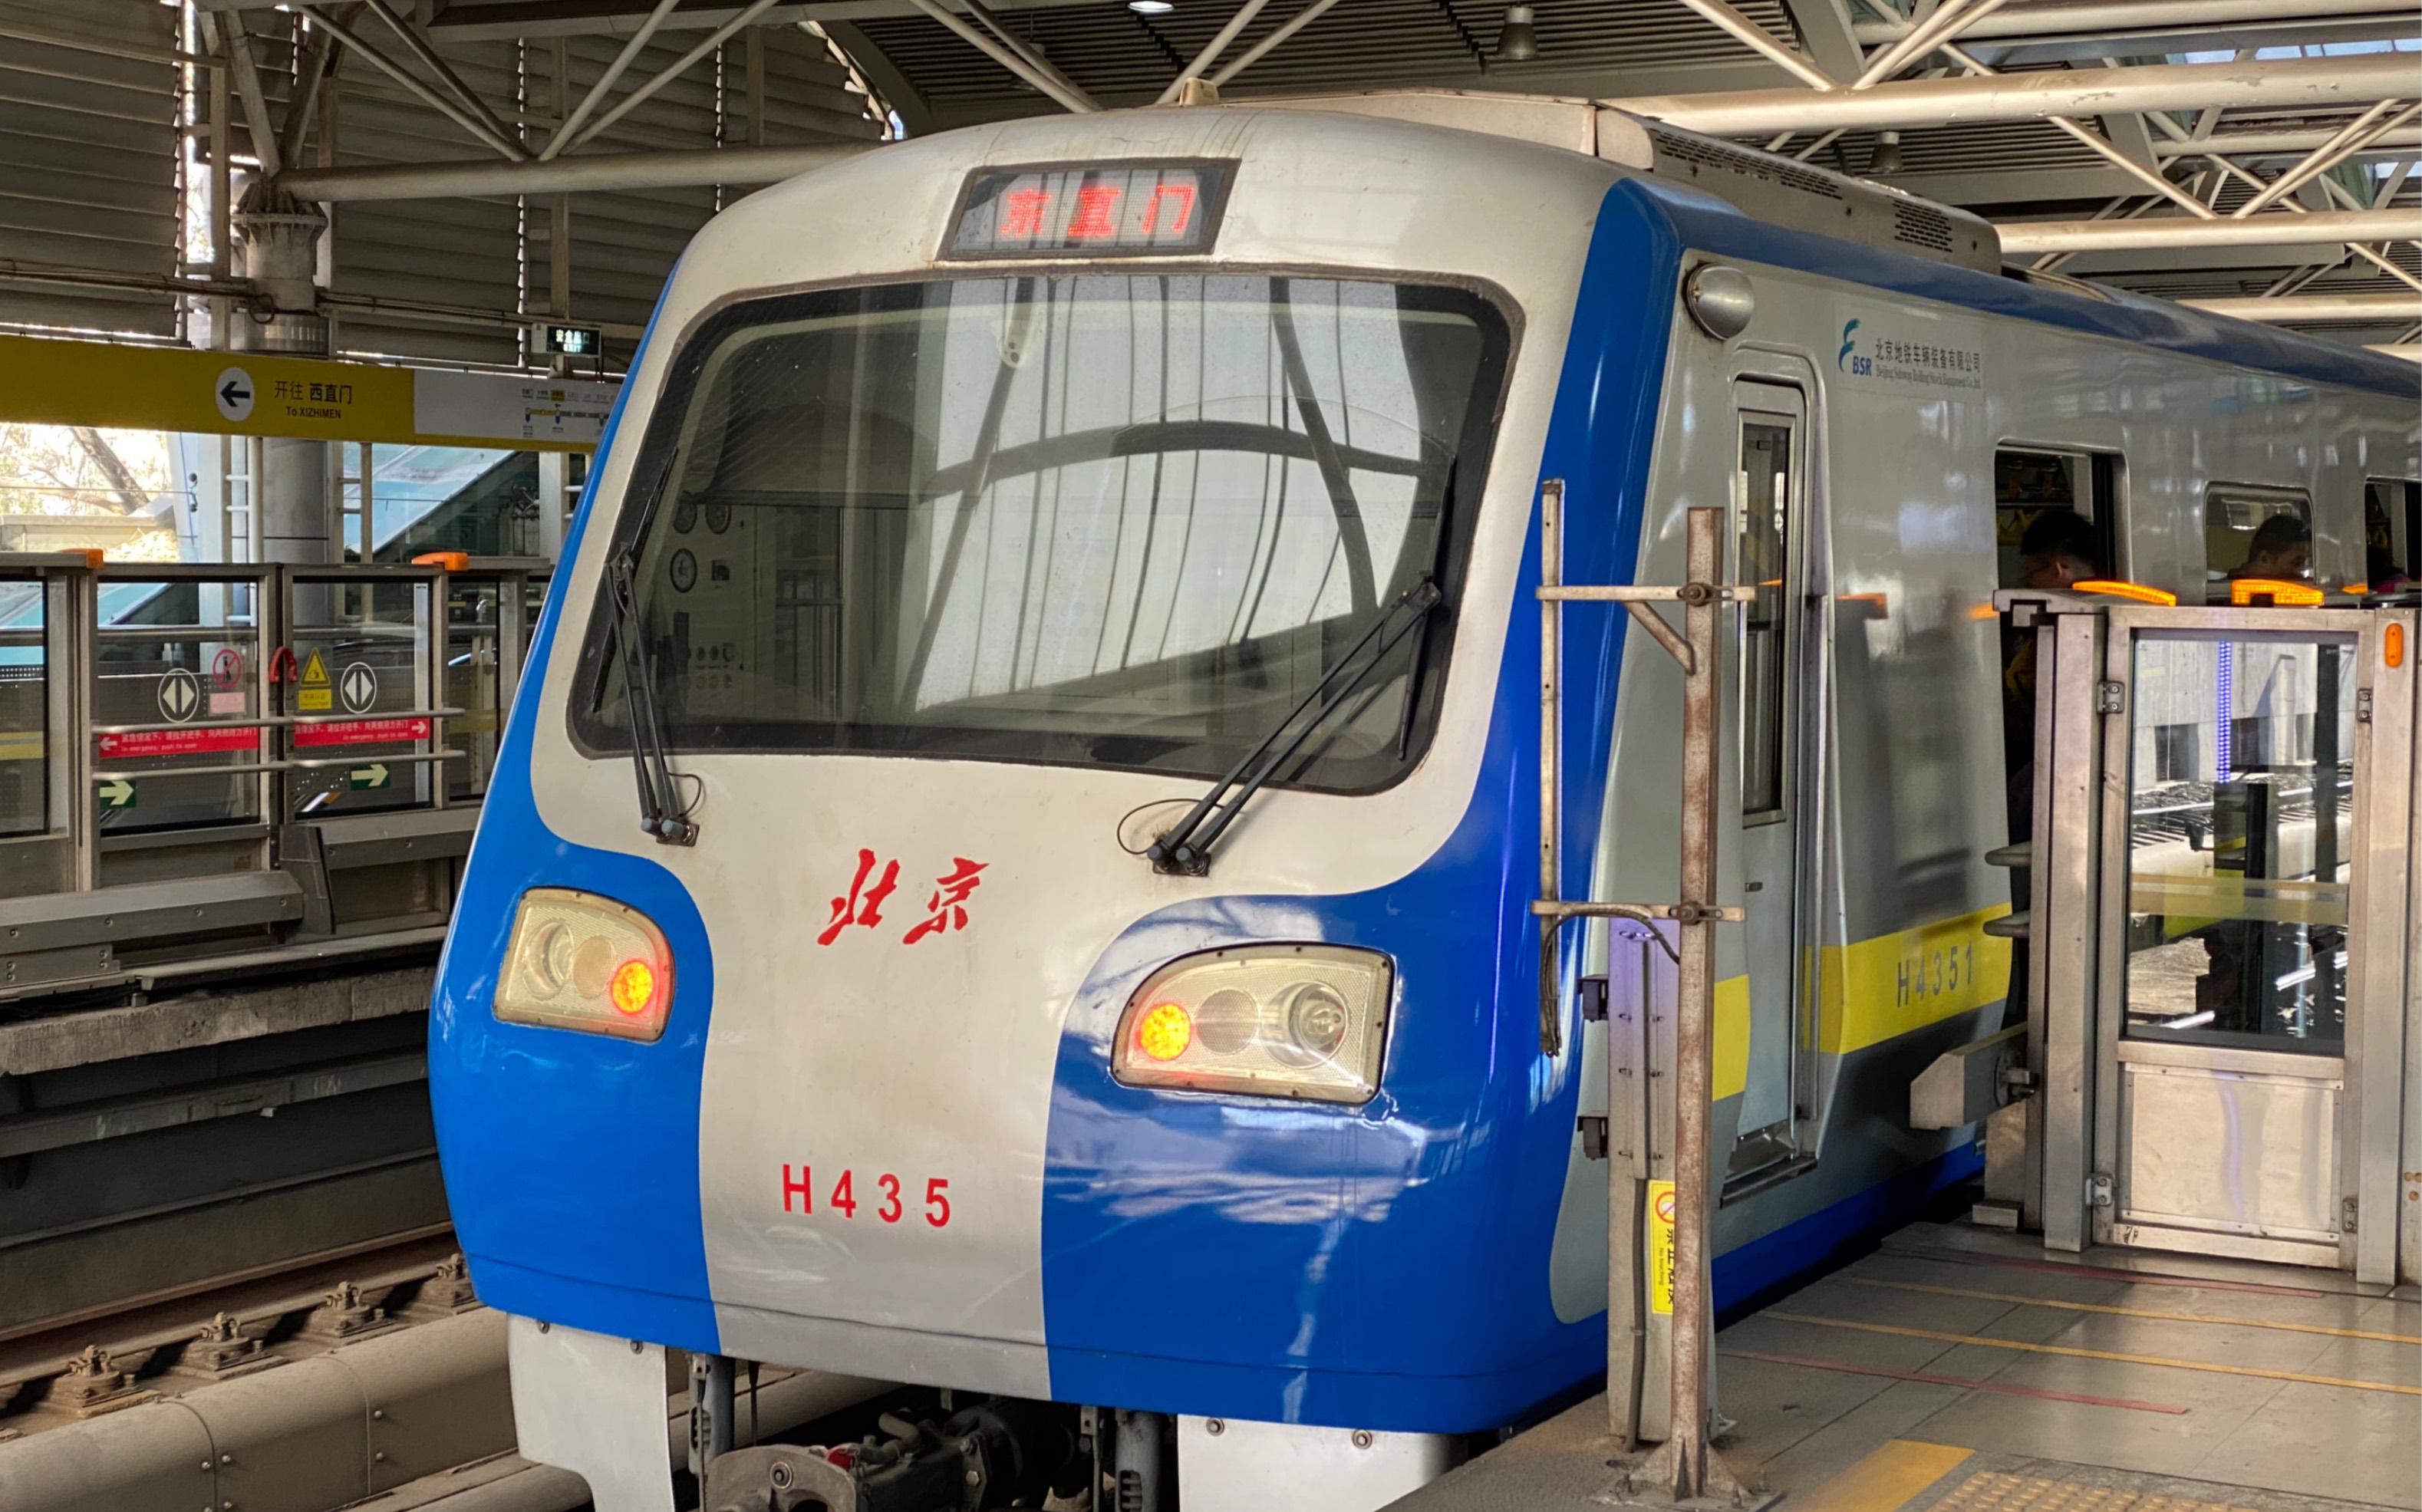 【dkz5样车】北京地铁13号线h435号车东直门方向进知春路站